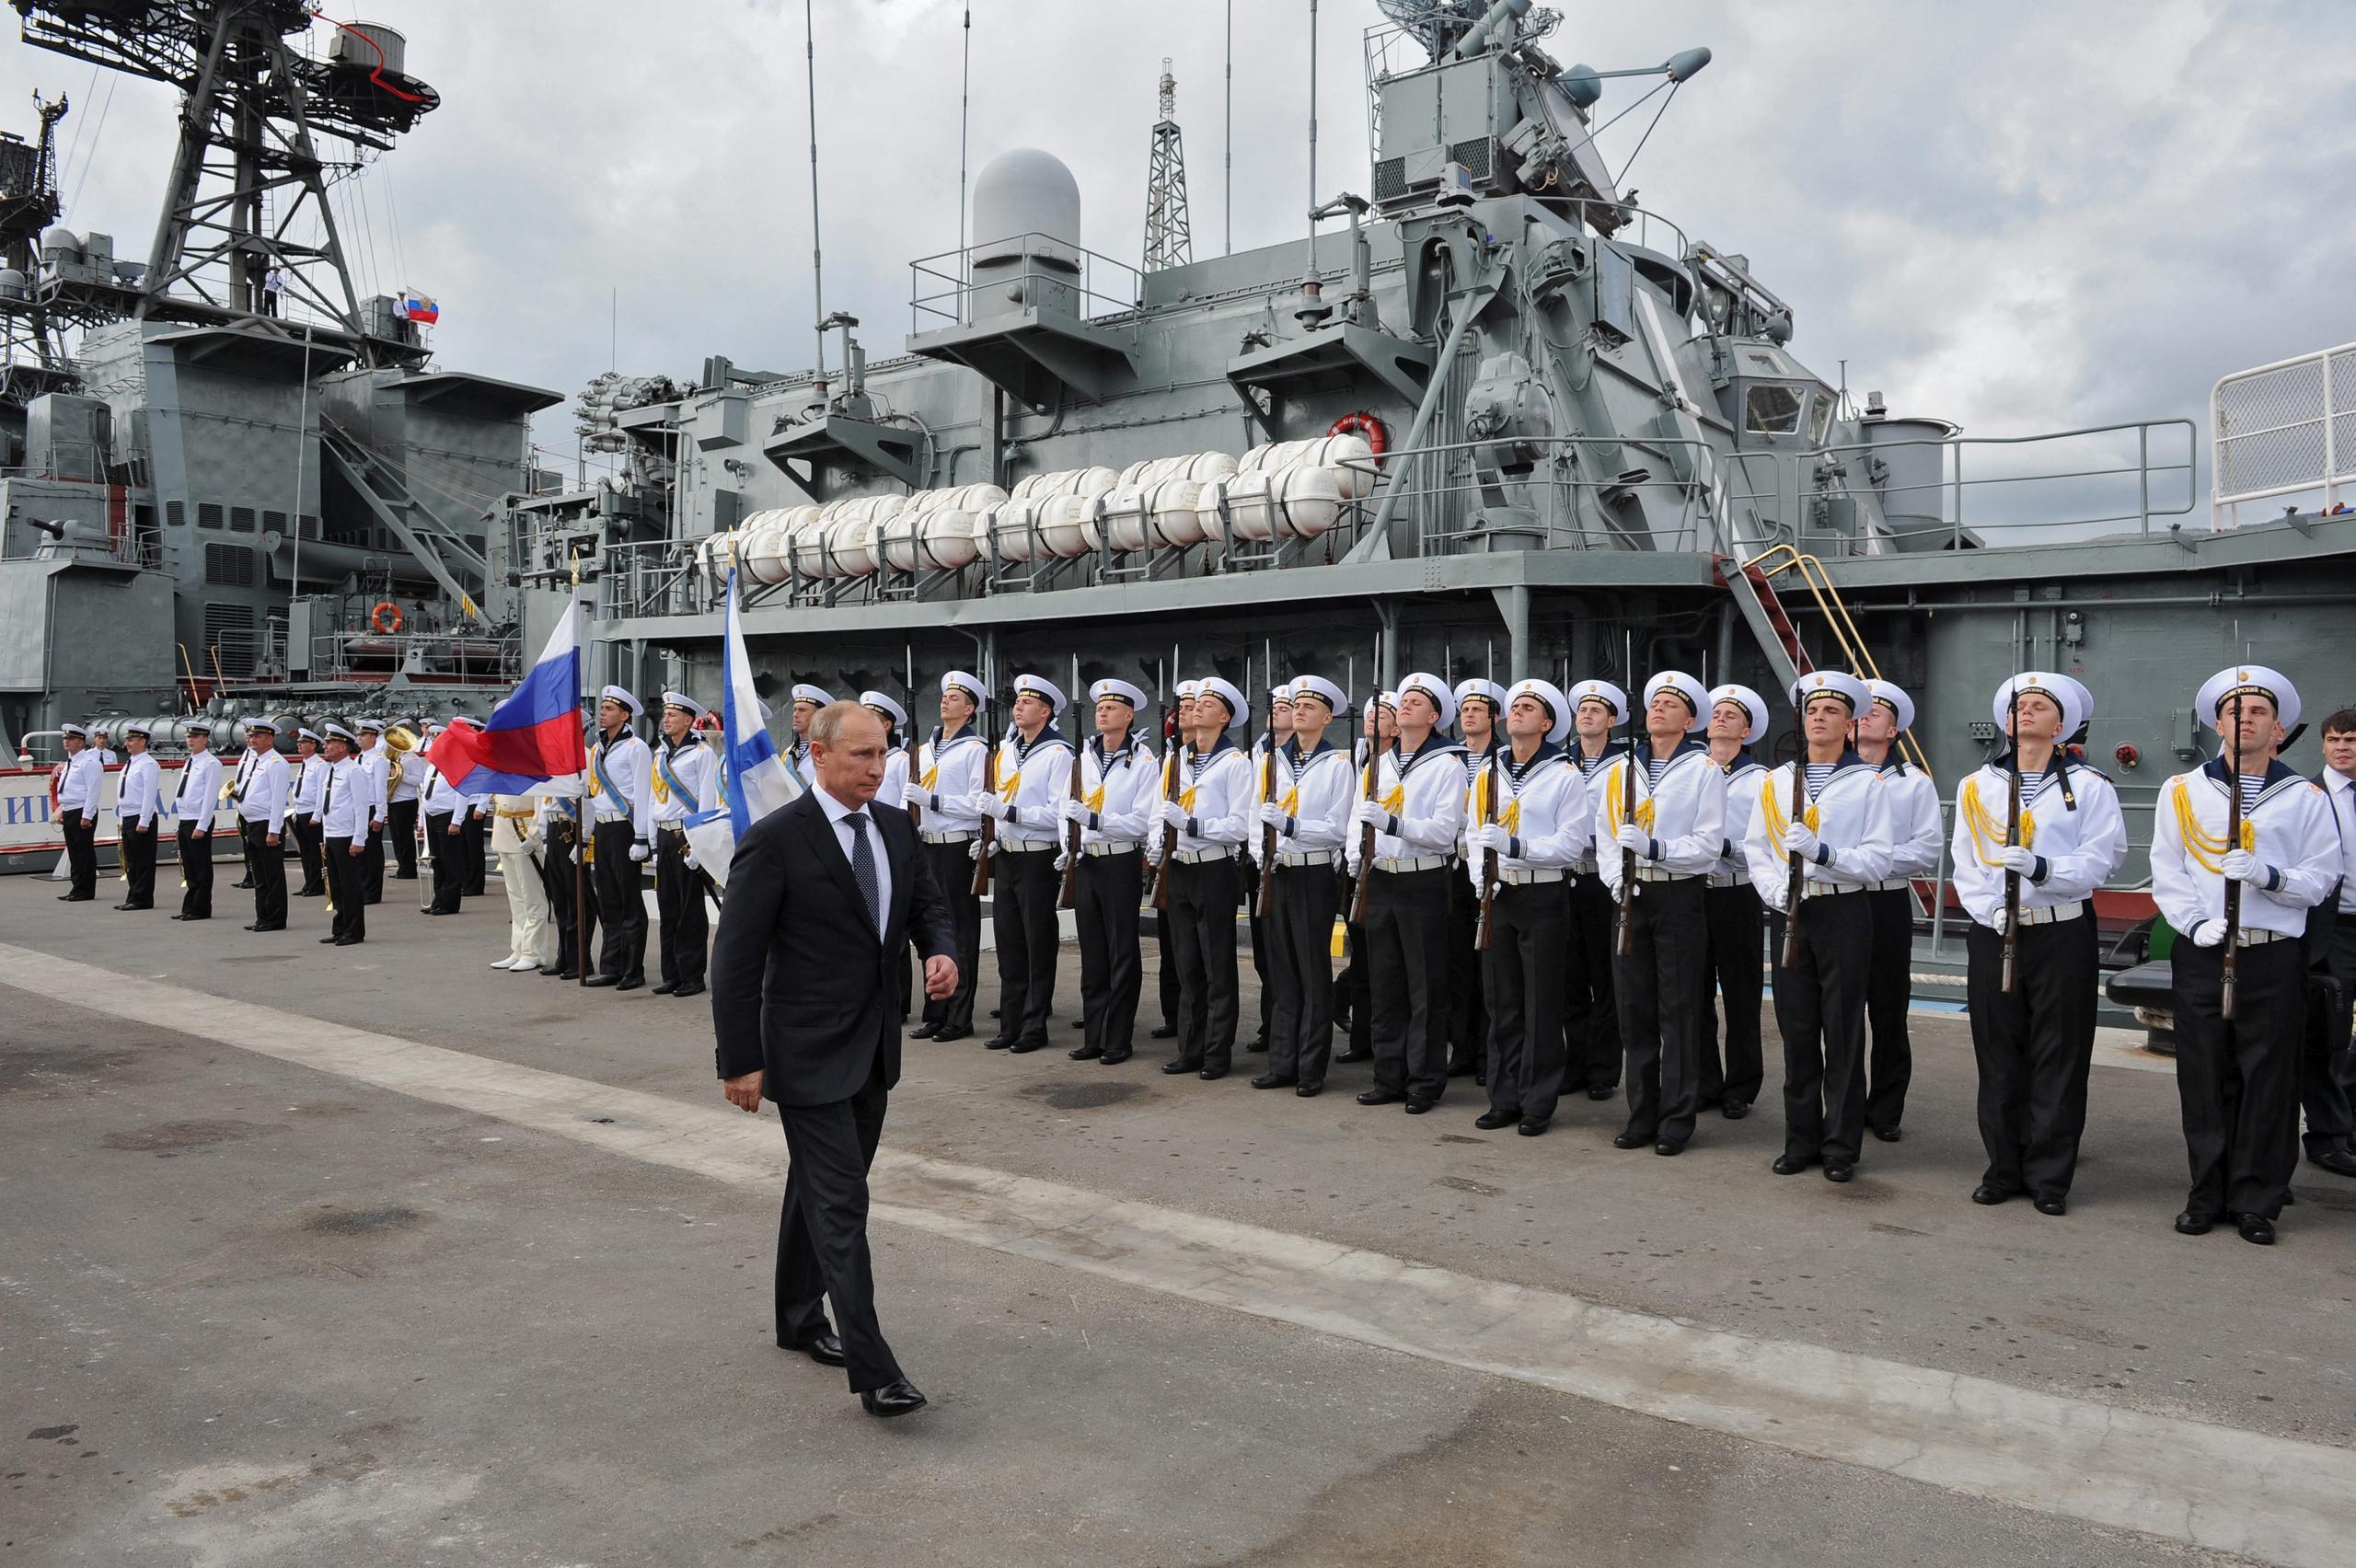 El presidente ruso, Vladimir Putin, asiste a una ceremonia de bienvenida frente al buque de guerra "Vicealmirante Kulakov" en el puerto de Novorossiysk, en el Mar Negro en 2014. EFE/EPA/MIKHAIL KLIMENTYEV/RIA NOVOSTI/KREMLIN POOL
